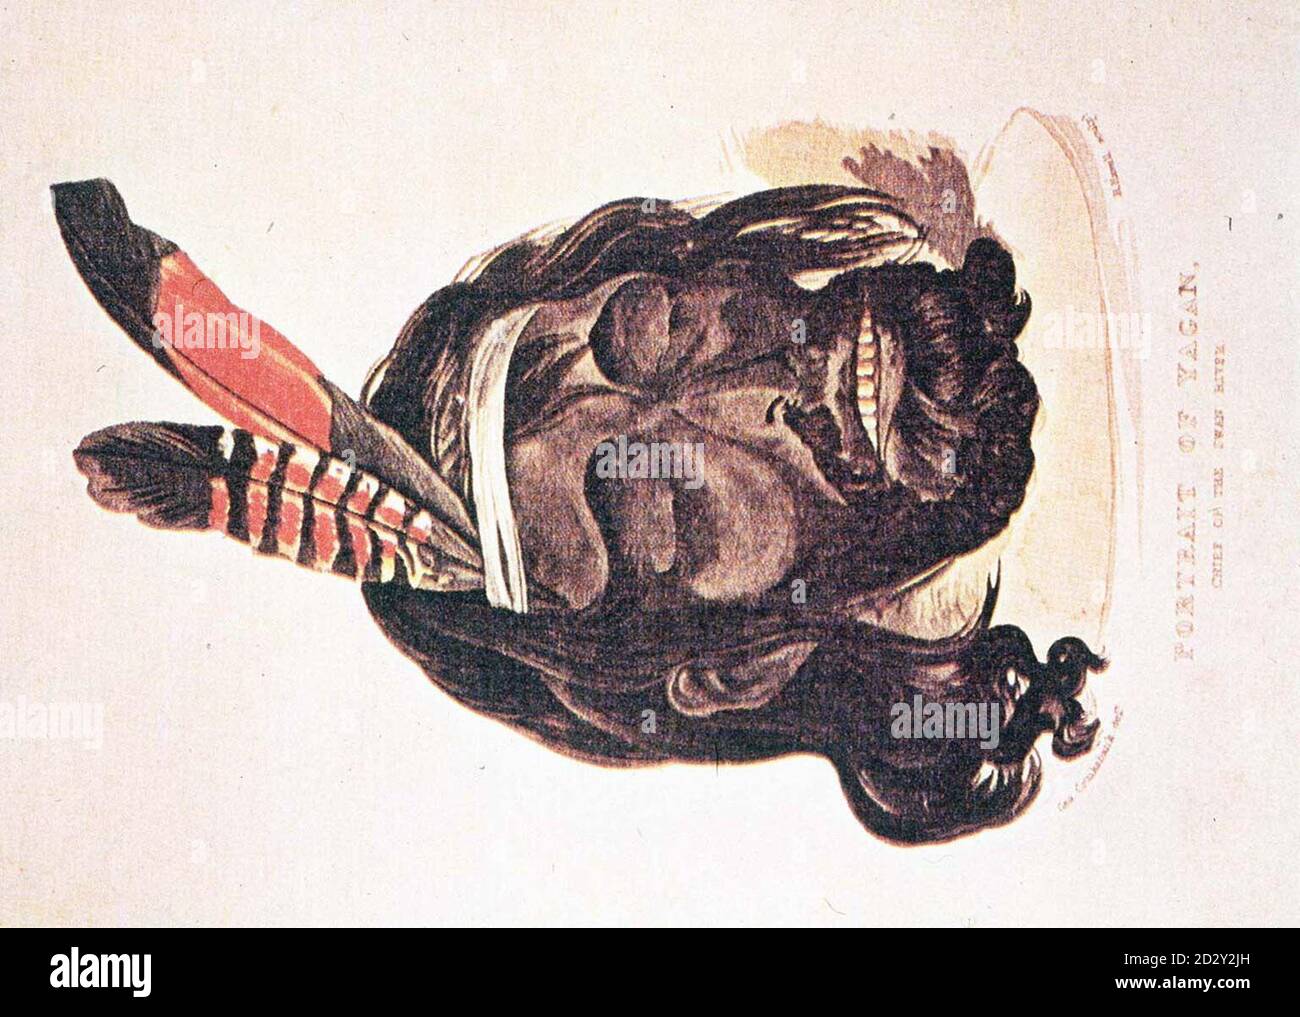 La peinture de portrait est une représentation d'un héros tribal aborigène appelé Yagan dont le crâne a été exhumé aujourd'hui (vendredi) de sa tombe à Everton Cemetry, Liverpool. Il doit être transféré au musée de Liverpool pour identification avant d'être remis au Haut-commissariat d'Australie et de retourner dans sa patrie. Photo PA Voir l'histoire PA SOCIAL Head Banque D'Images